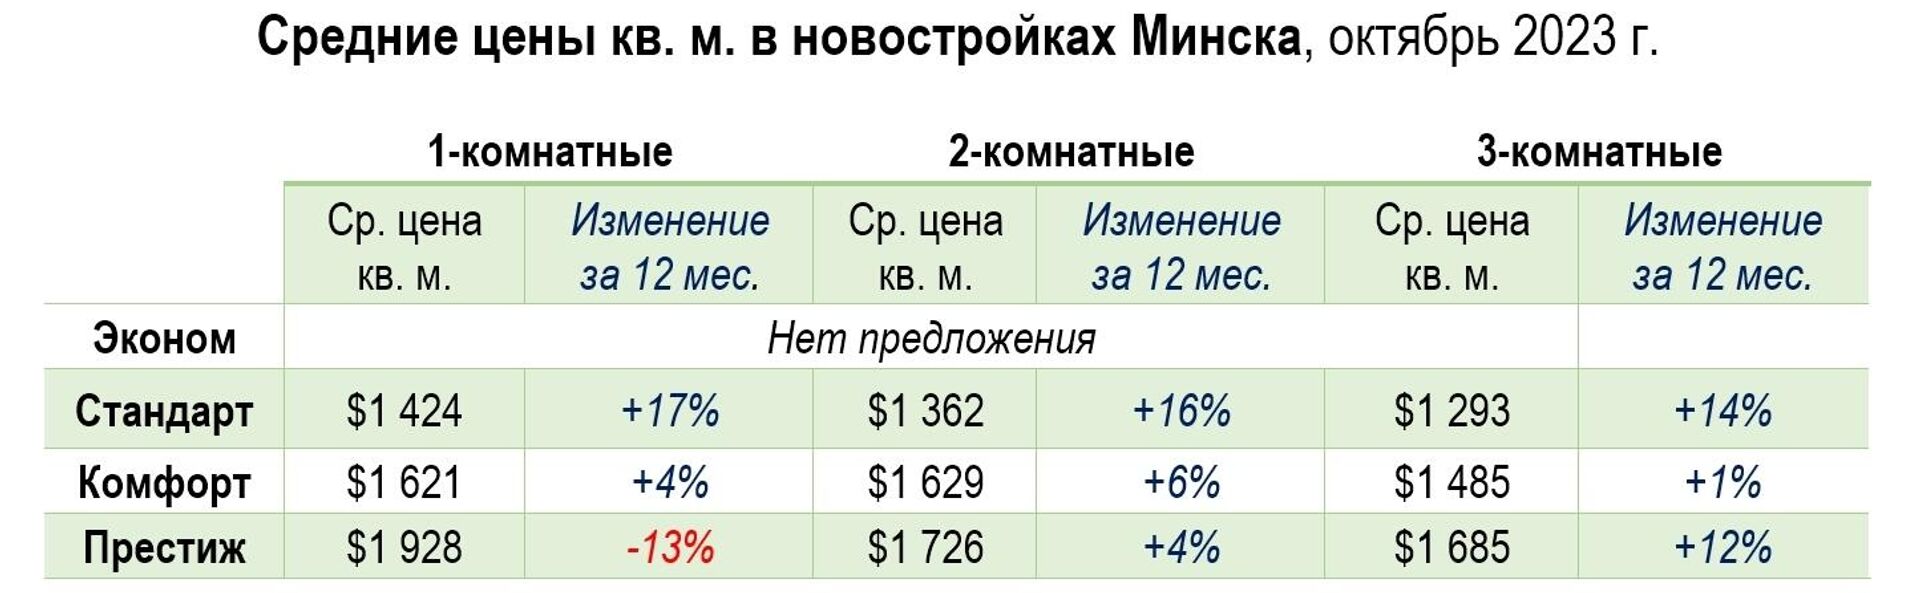 Средние цены в новостройках Минска за октябрь 2023 года - Sputnik Беларусь, 1920, 24.10.2023